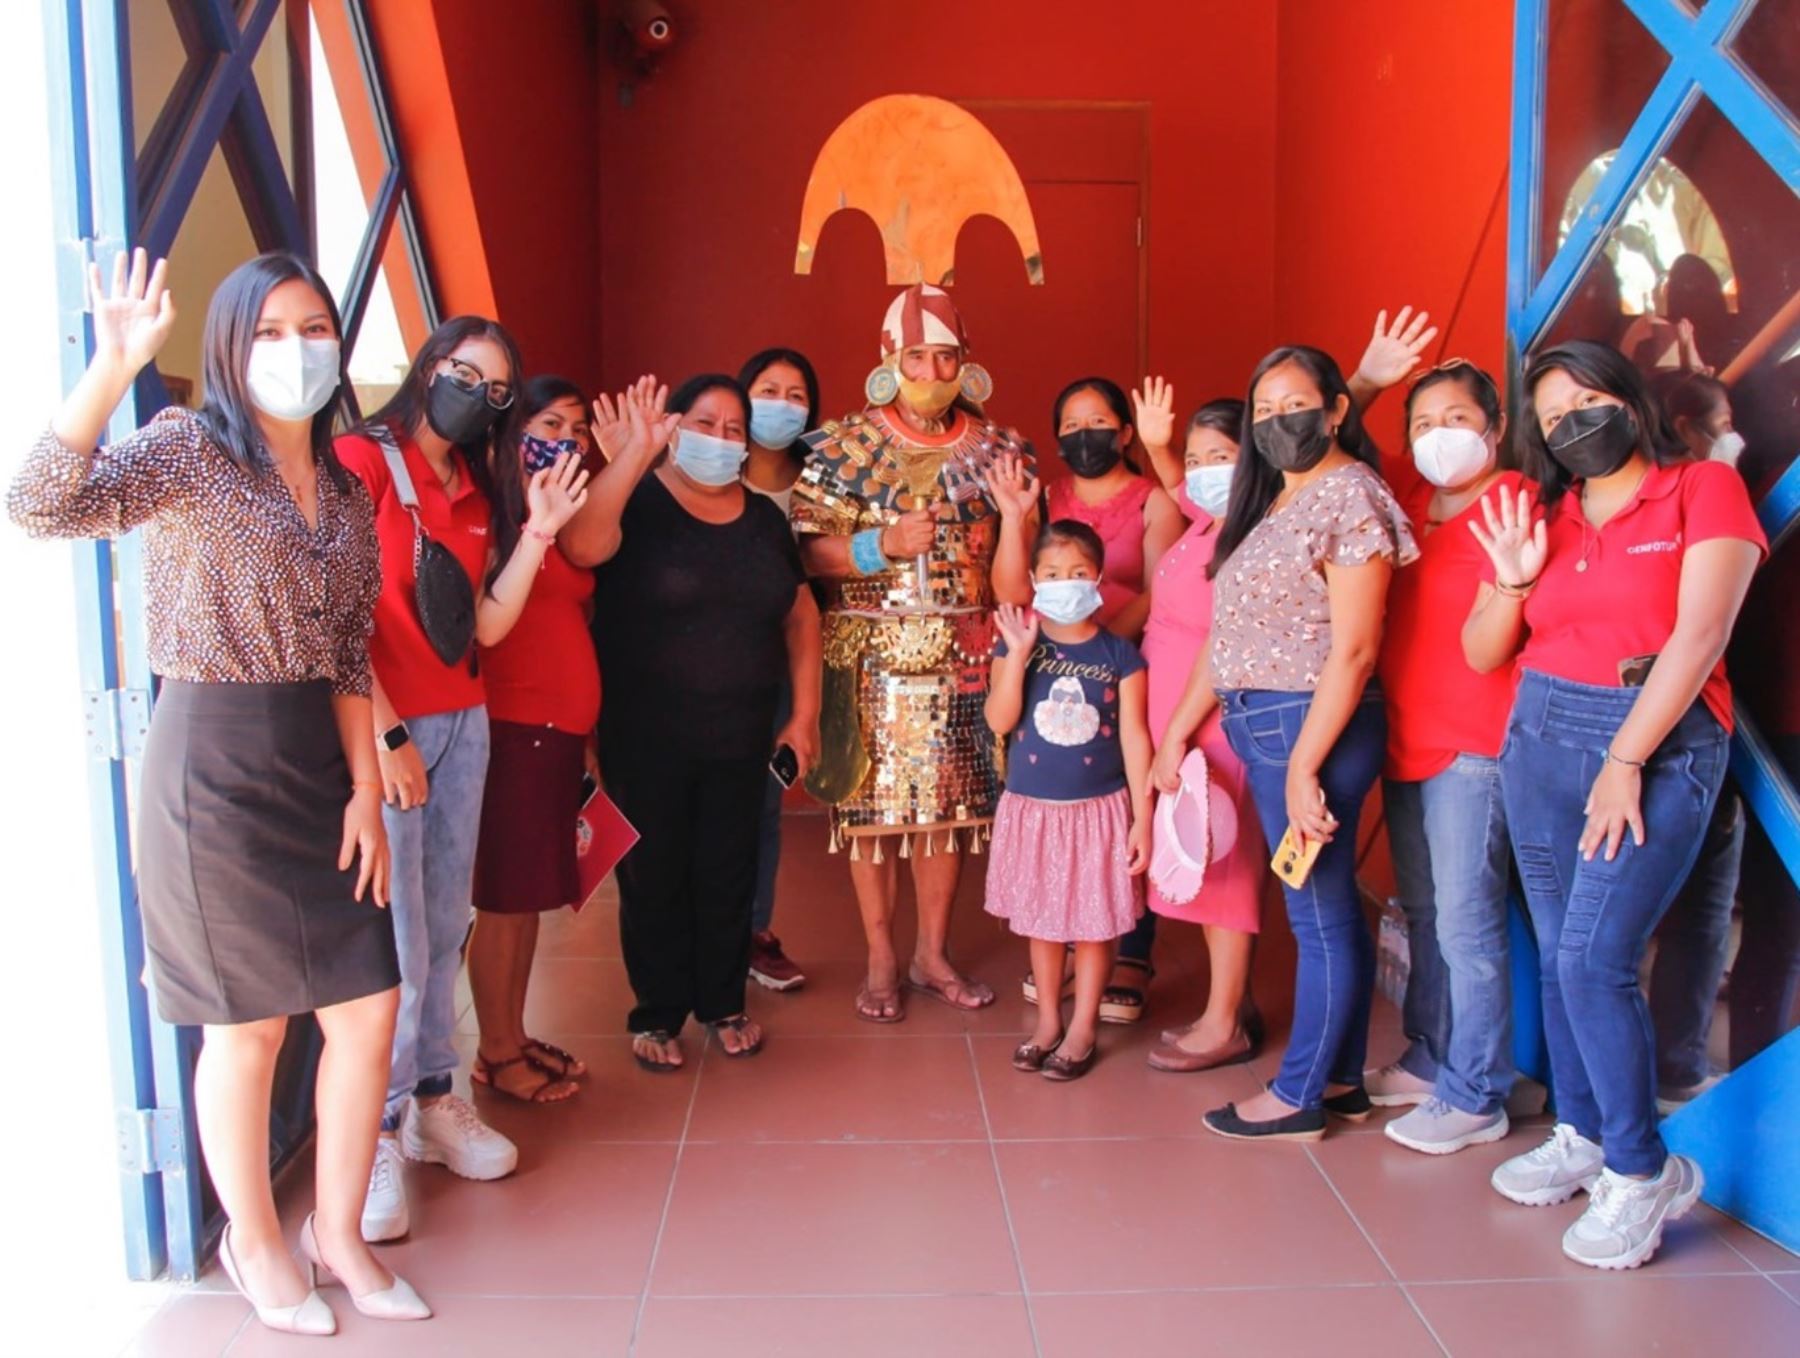 El Museo Tumbas Reales de Sipán, en Lambayeque, organiza actividades en homenaje al Día Internacional de la Mujer. Otros recintos culturales también realizarán jornadas similares, informó el Ministerio de Cultura. ANDINA/Difusión